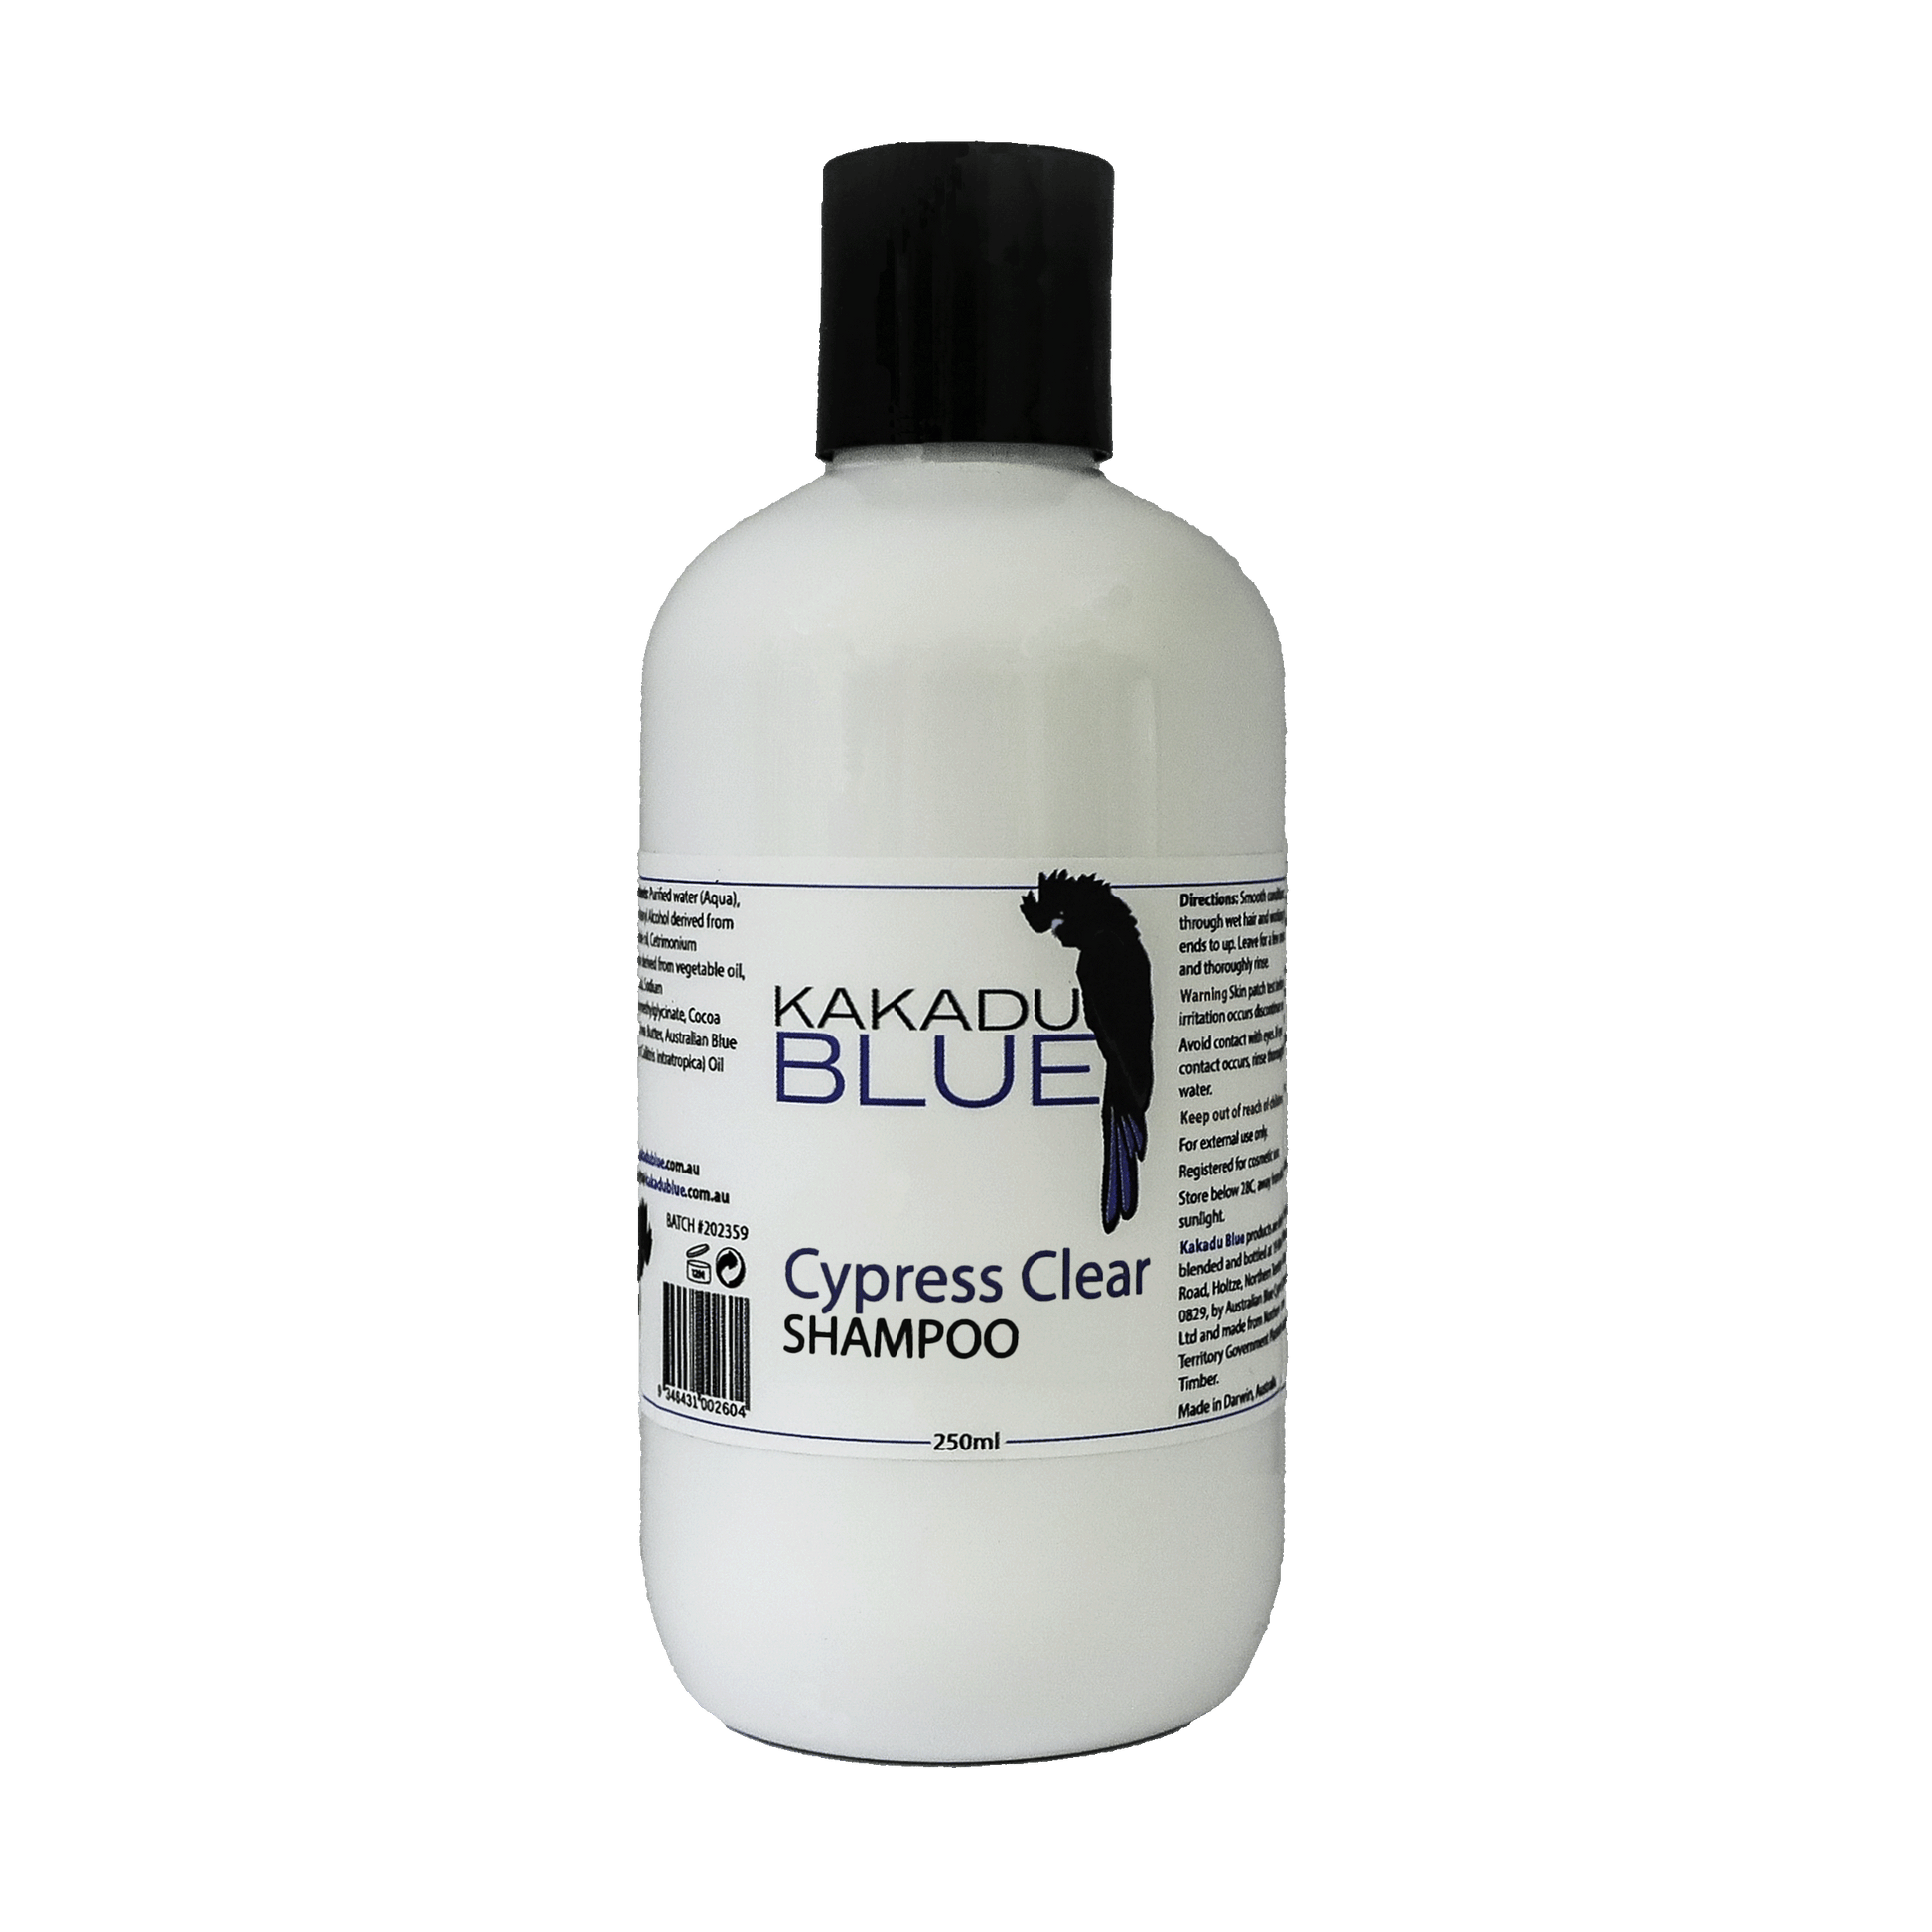 Cypress Clear - Shampoo